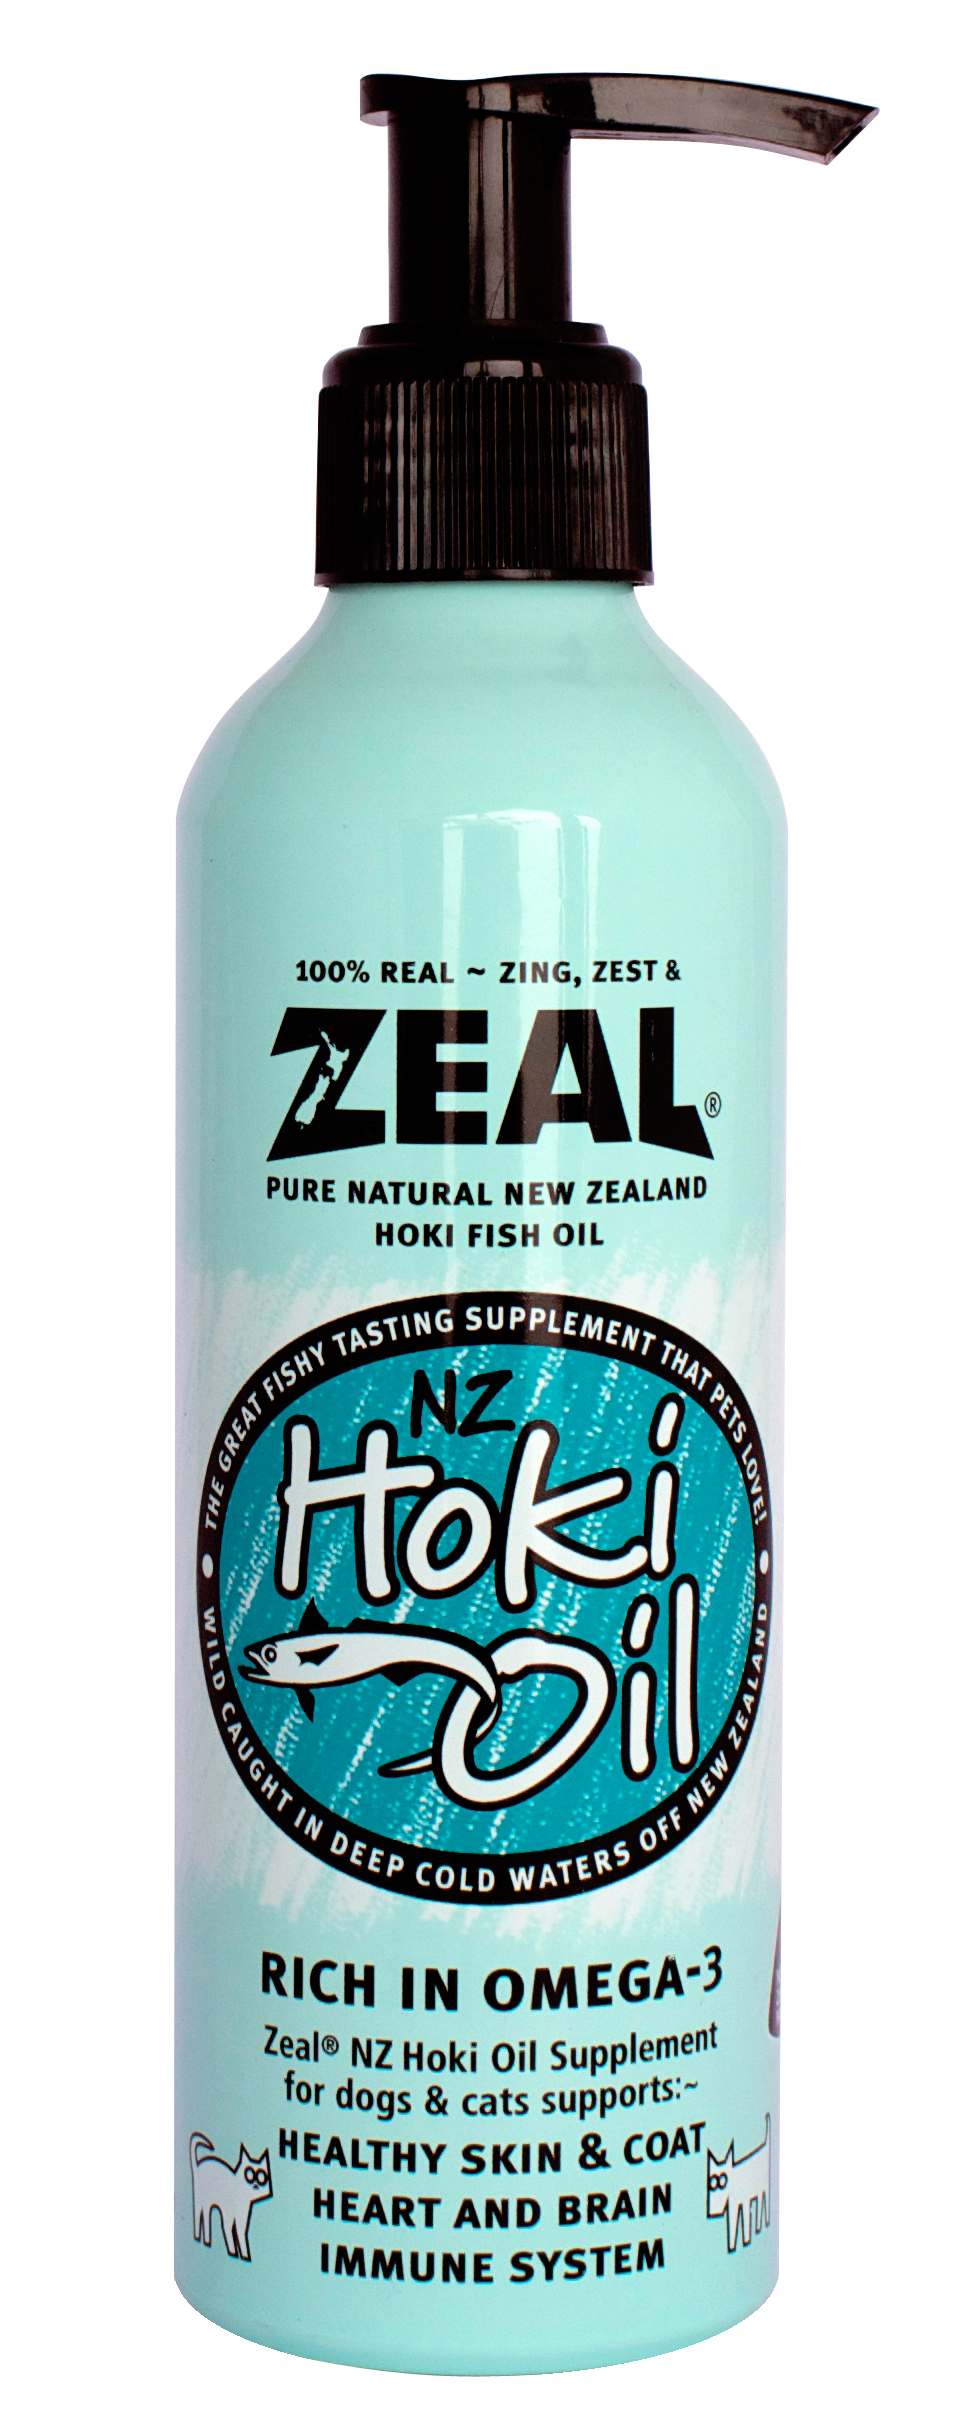 Zeal Hoki Fish Oil